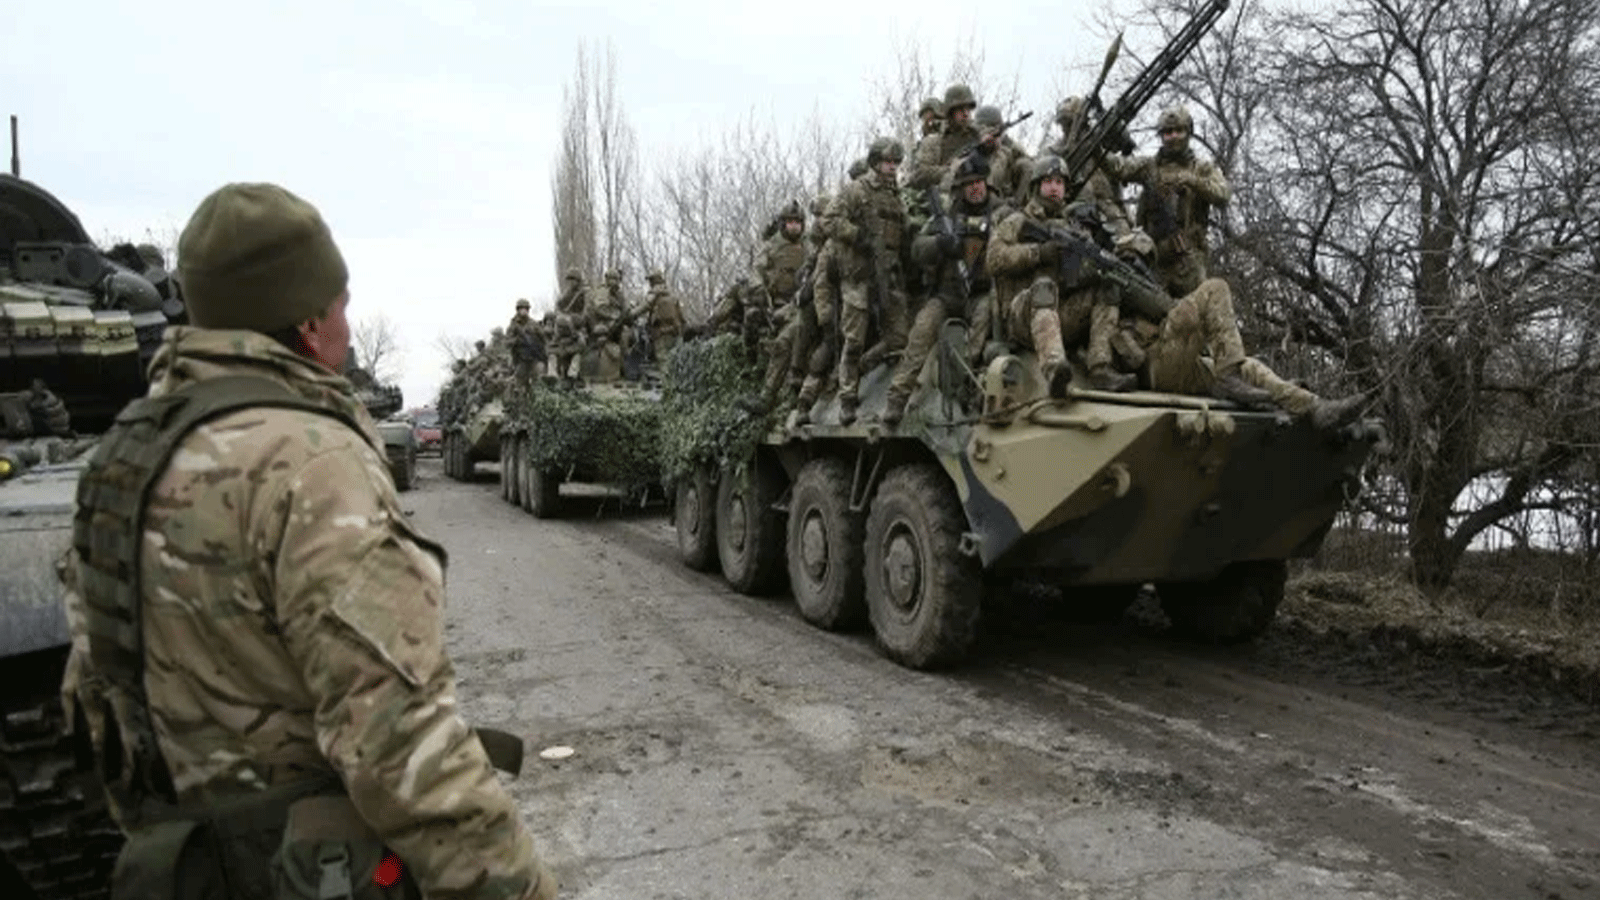 جنود أوكرانيون يستعدون لصد هجوم في منطقة لوغانسك بأوكرانيا.